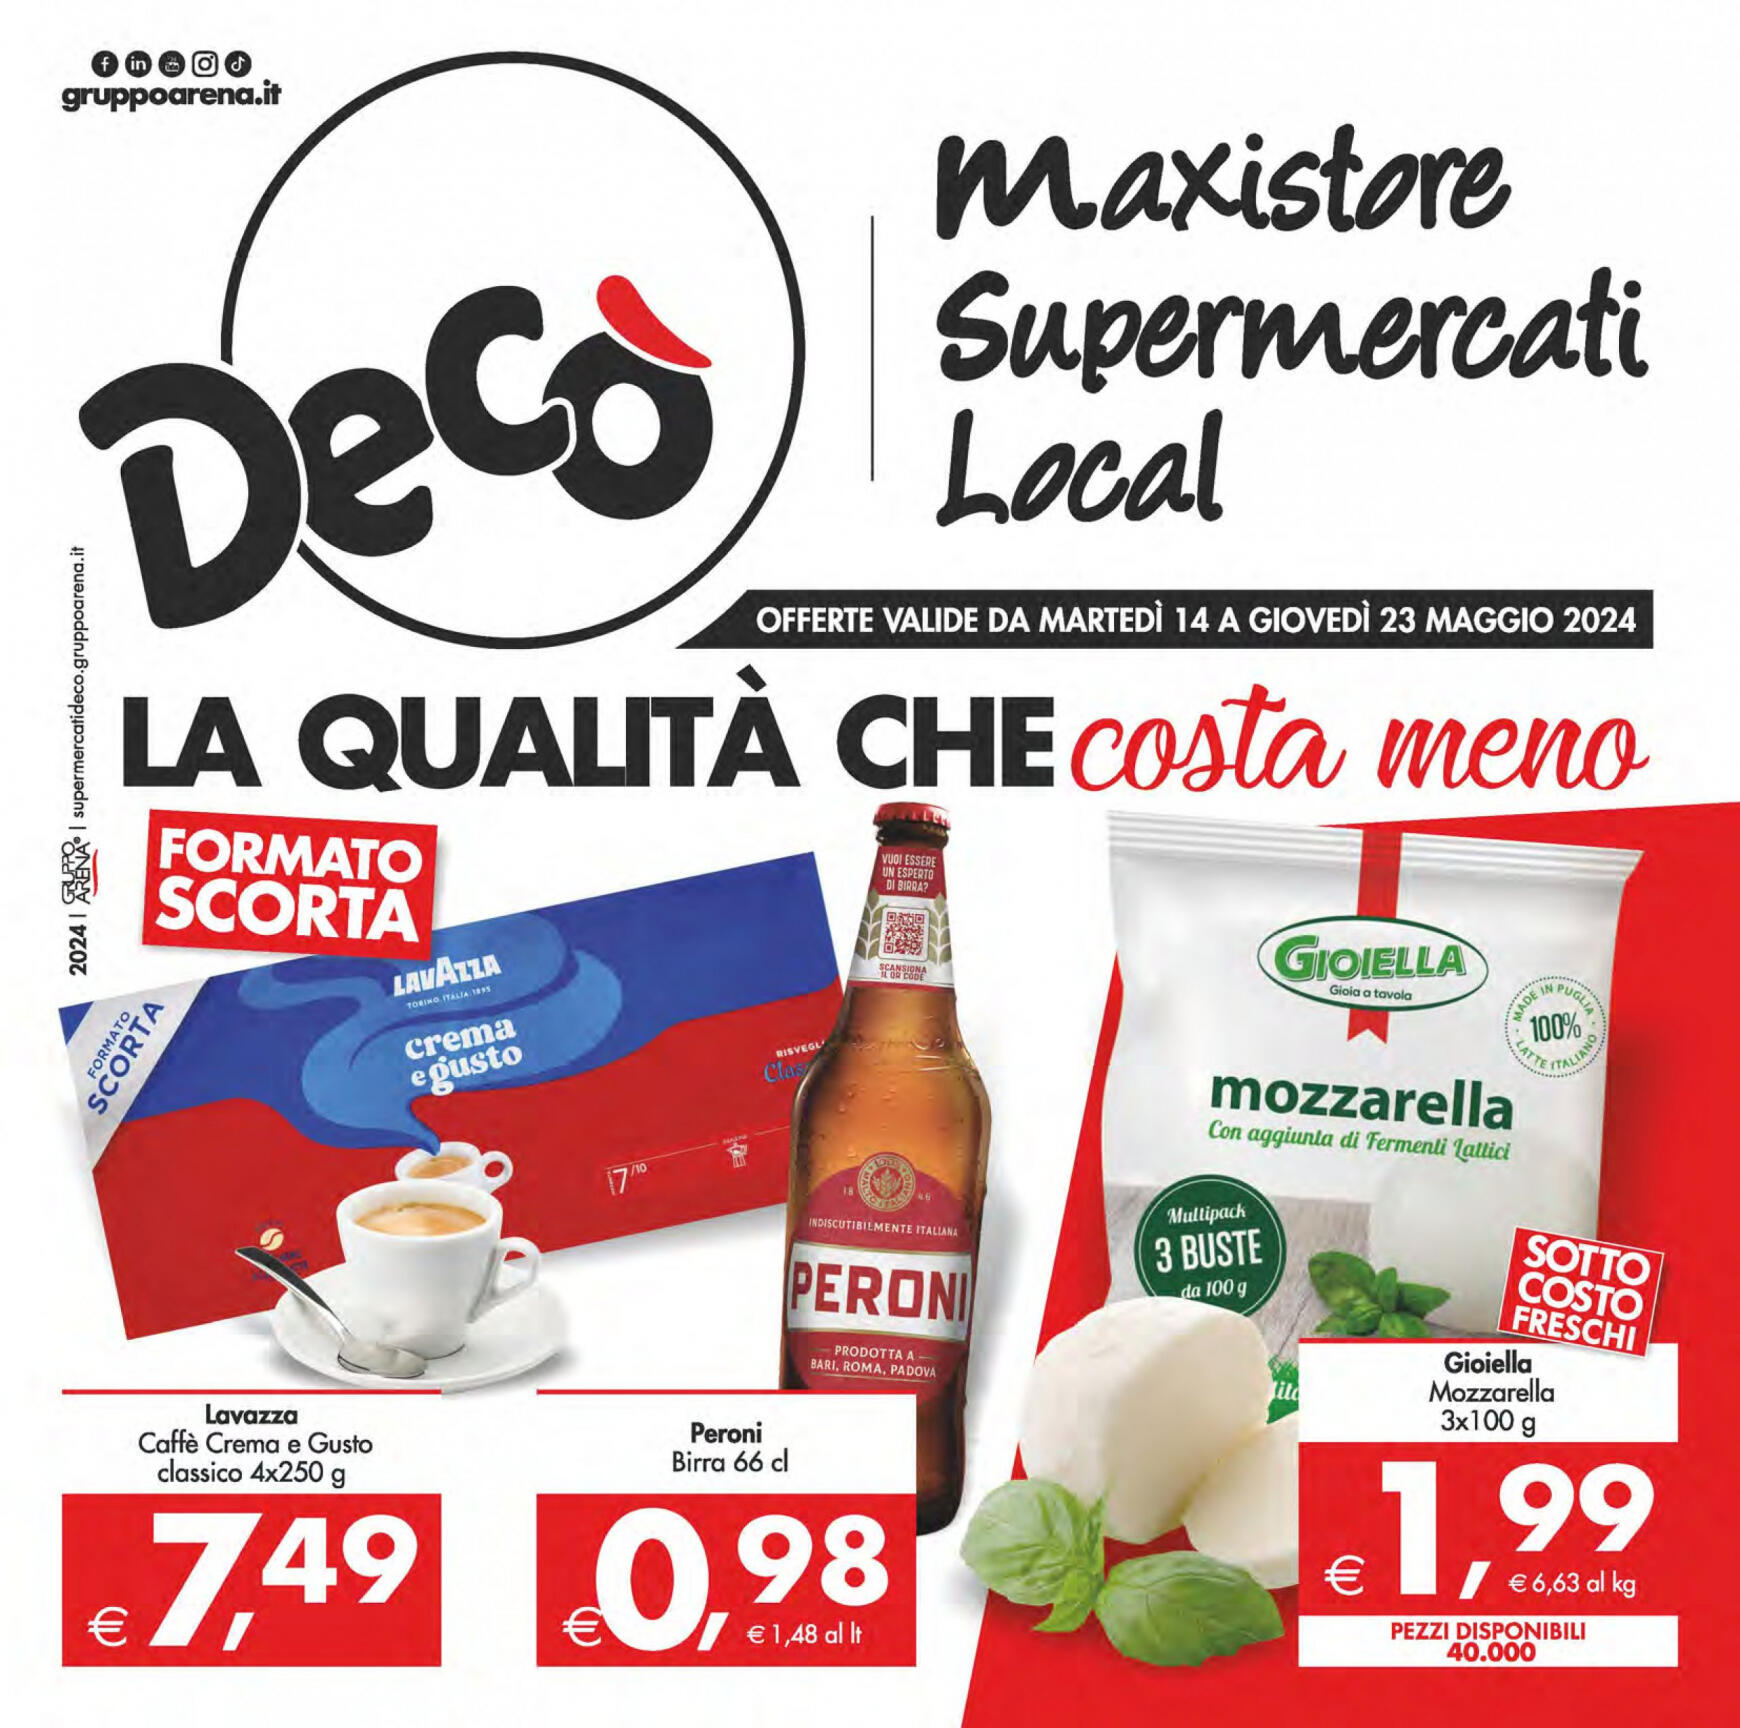 deco - Nuovo volantino Decò - Maxistore/Supermercati/Local 14.05. - 23.05.